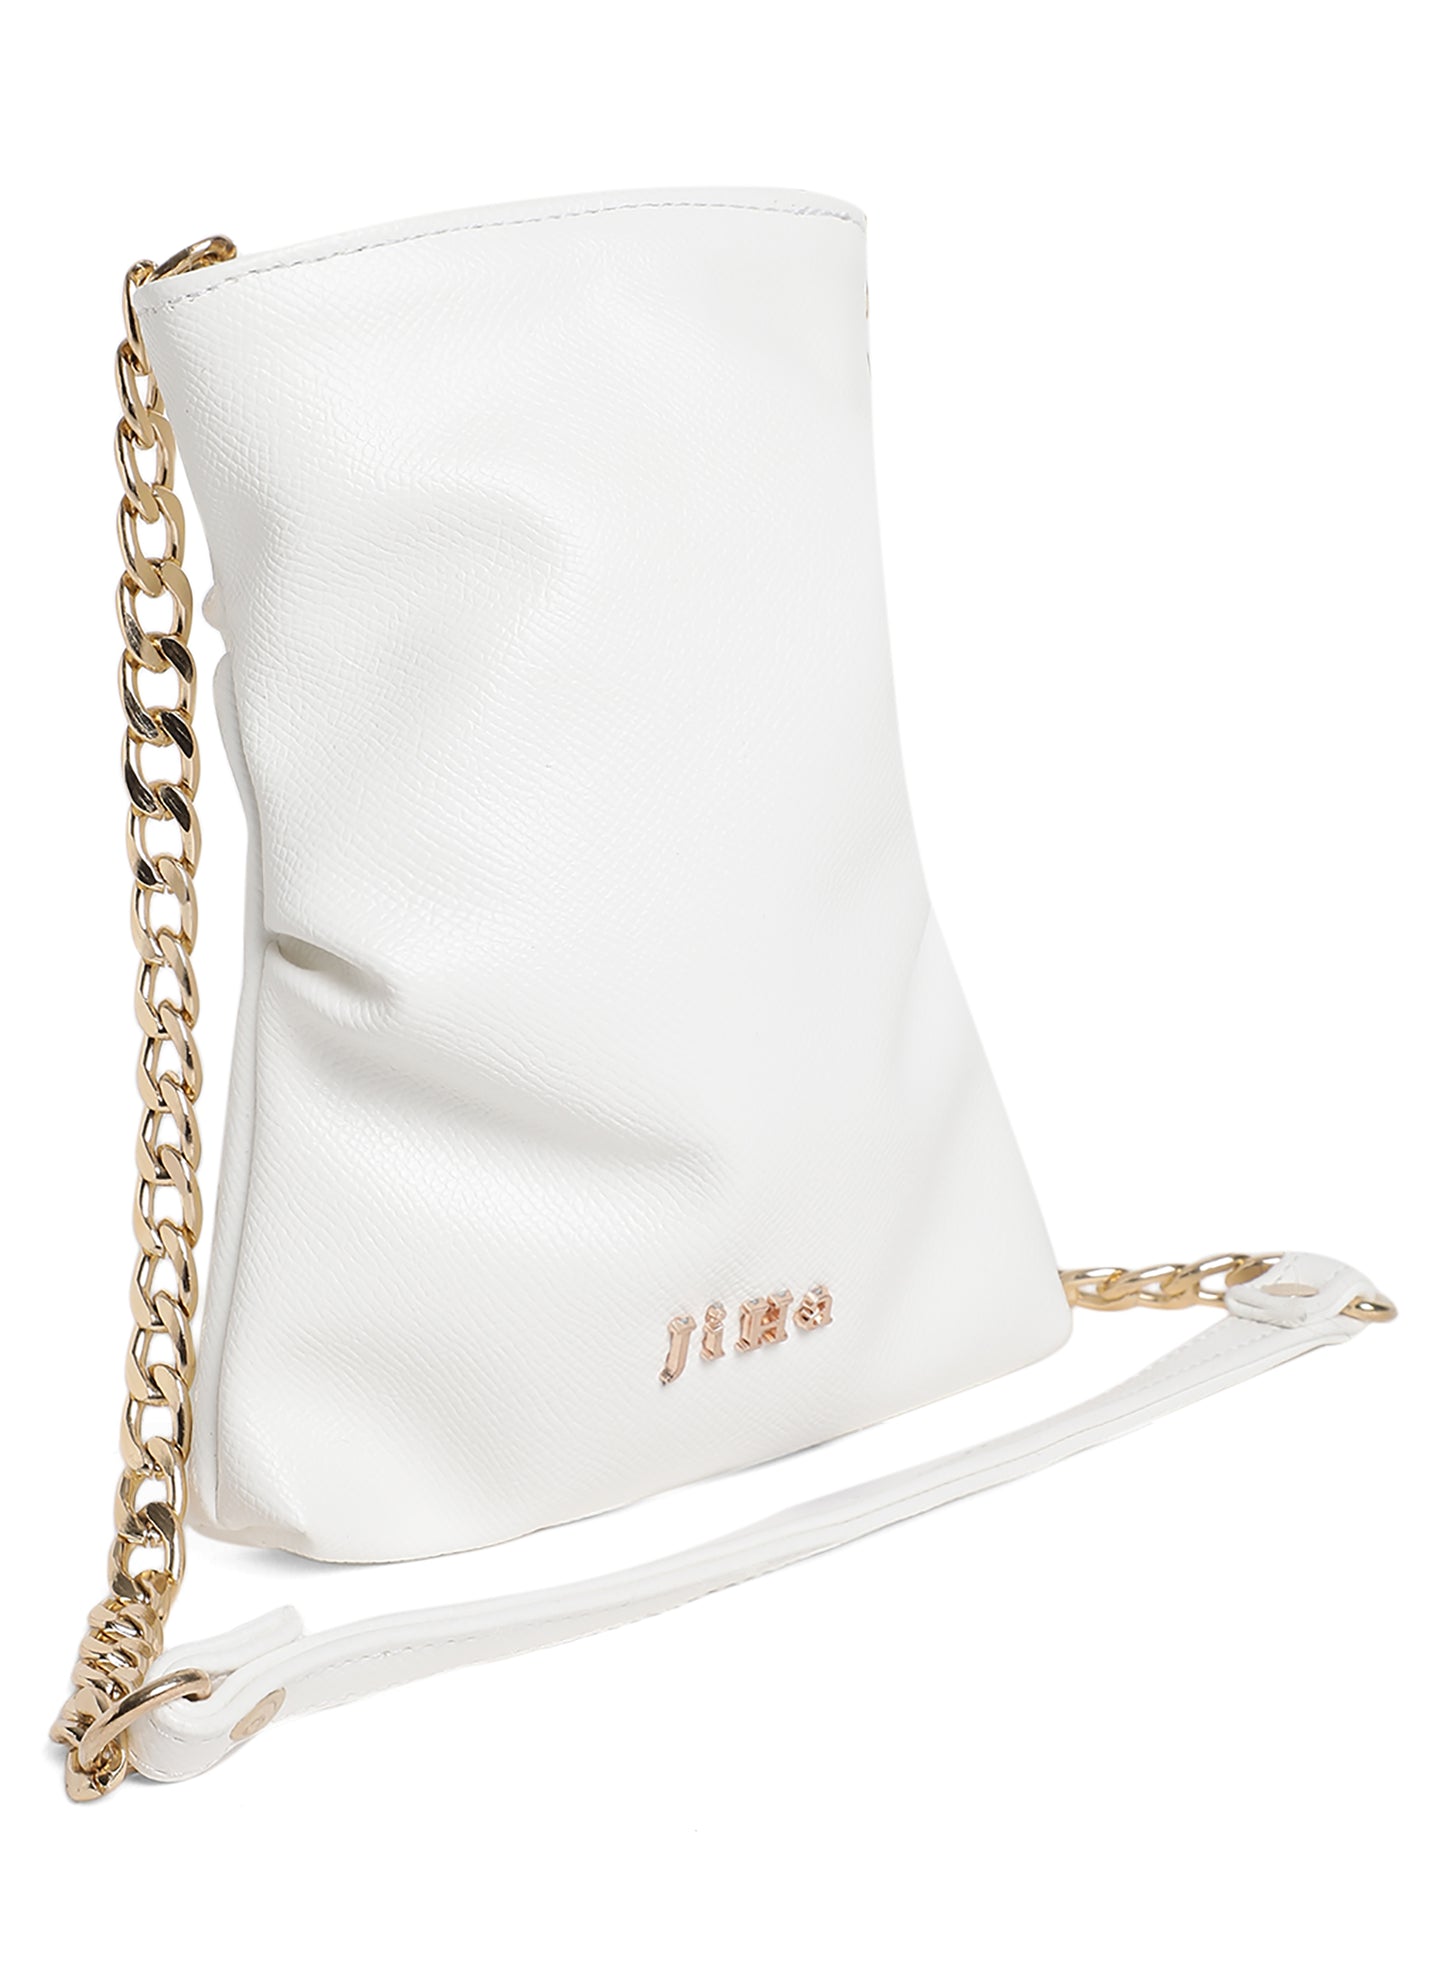 White Mini Basic Crossbody Sling Bag